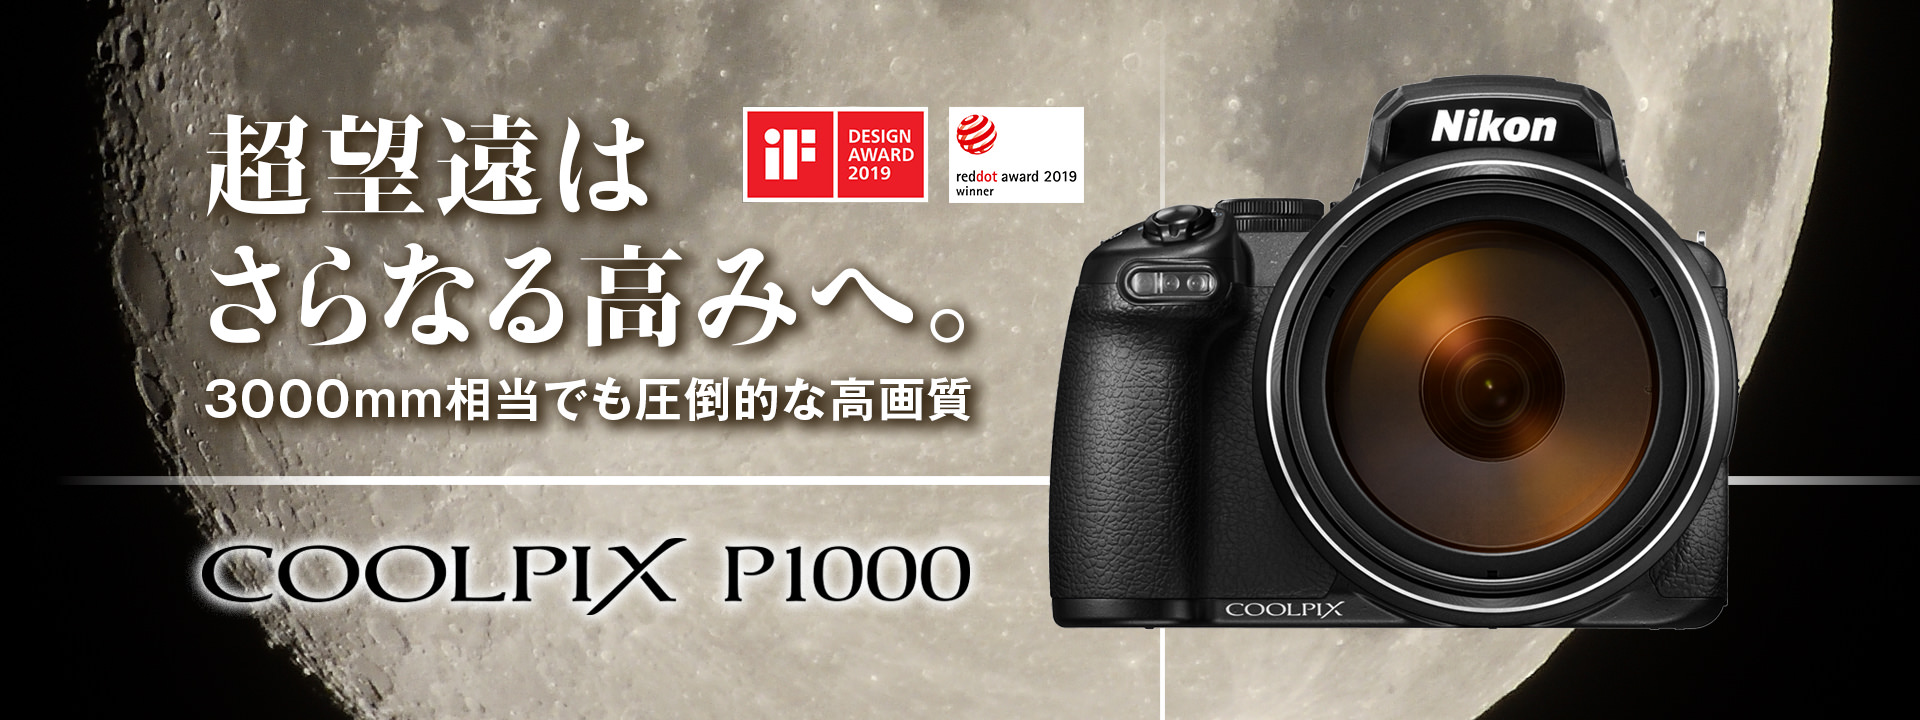 COOLPIX P1000 - 概要 | コンパクトデジタルカメラ | ニコンイメージング